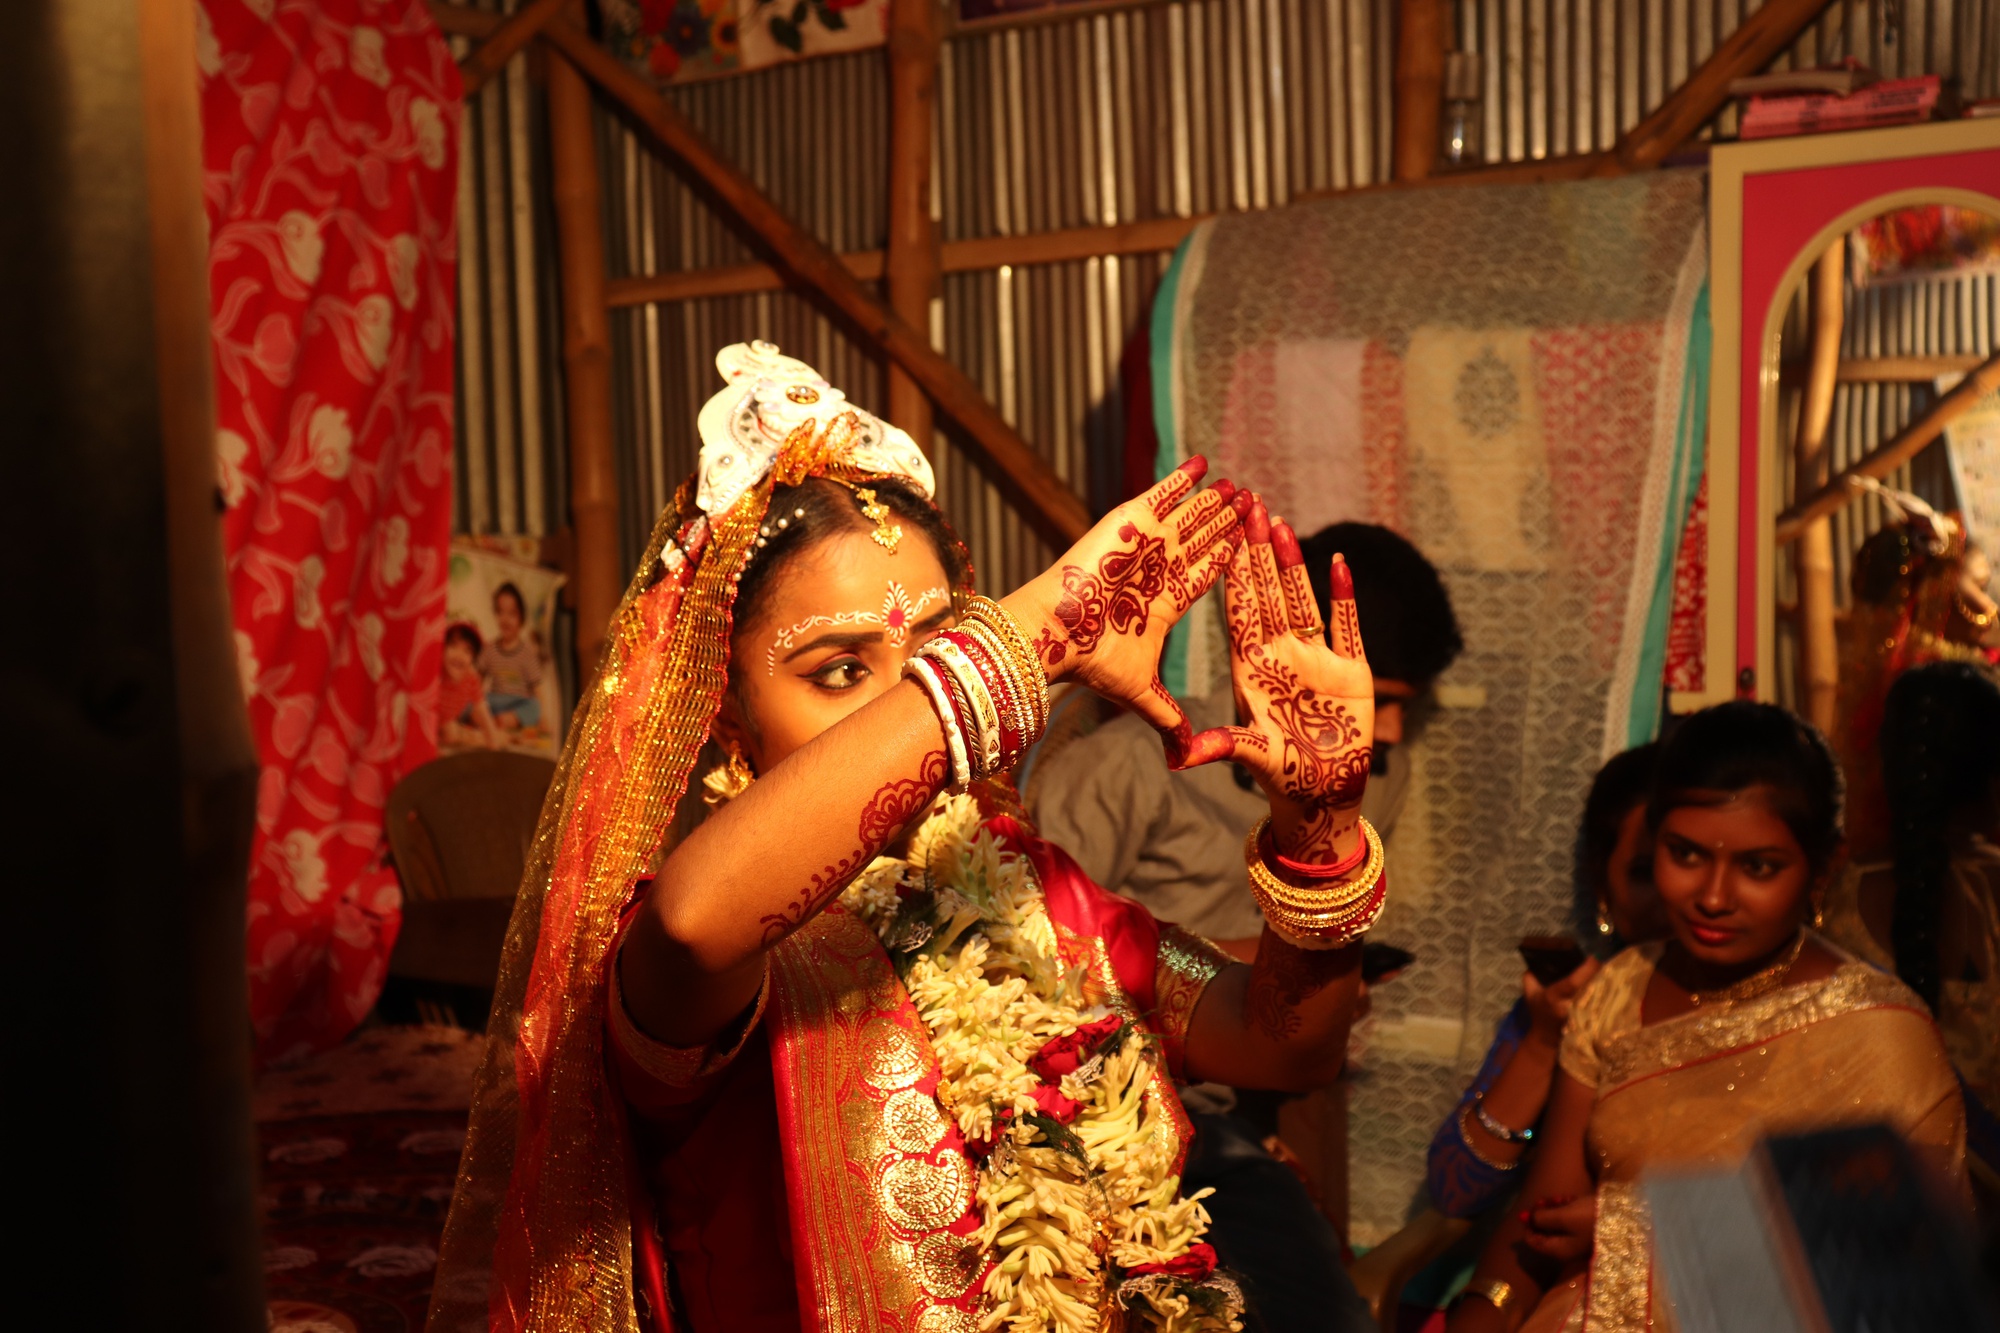 Hai chị em ở Ấn Độ lấy nhầm chú rể trong ngày cưới - Ảnh 1.